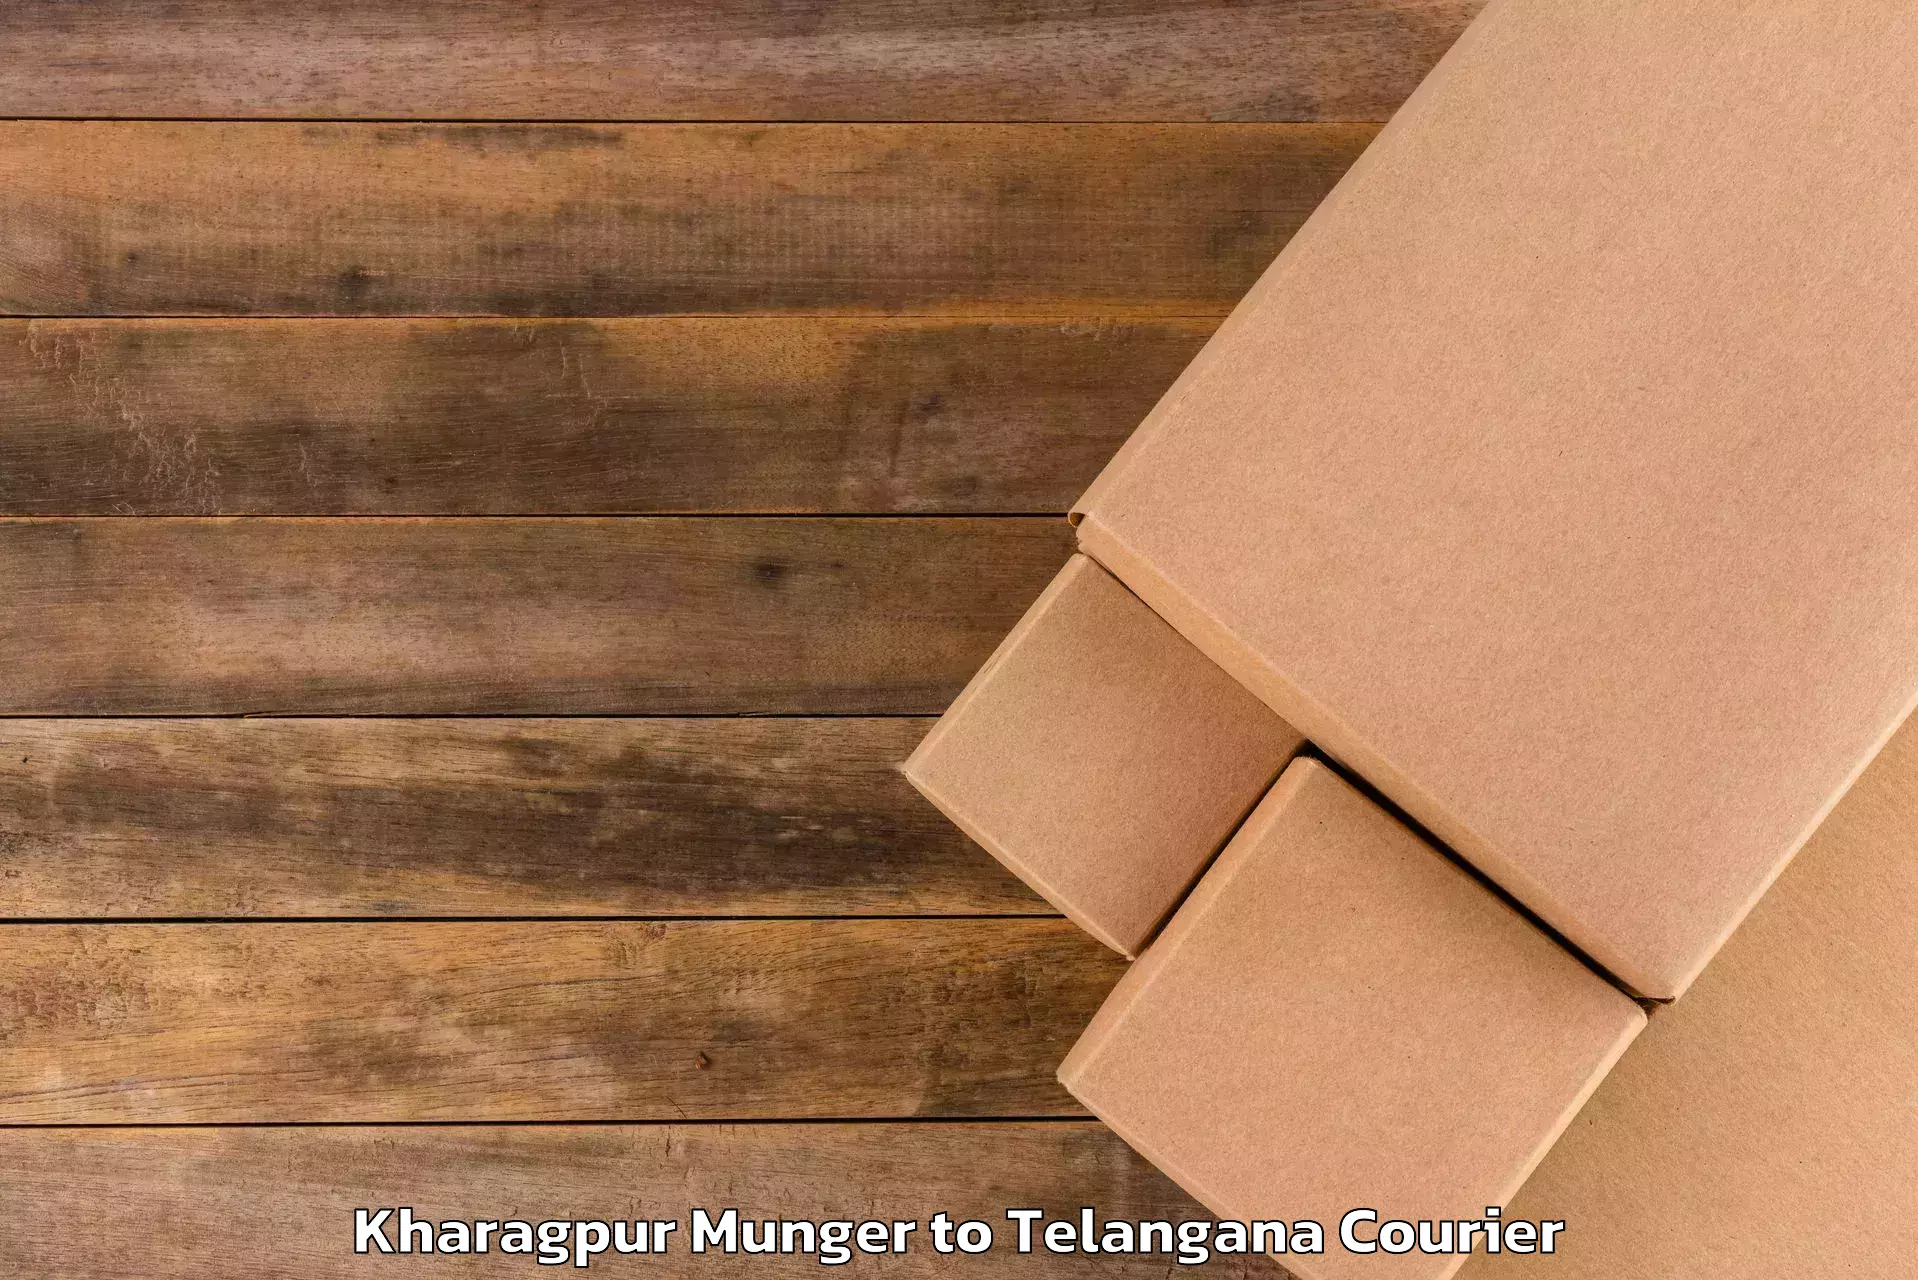 Luggage transport company Kharagpur Munger to Nalgonda